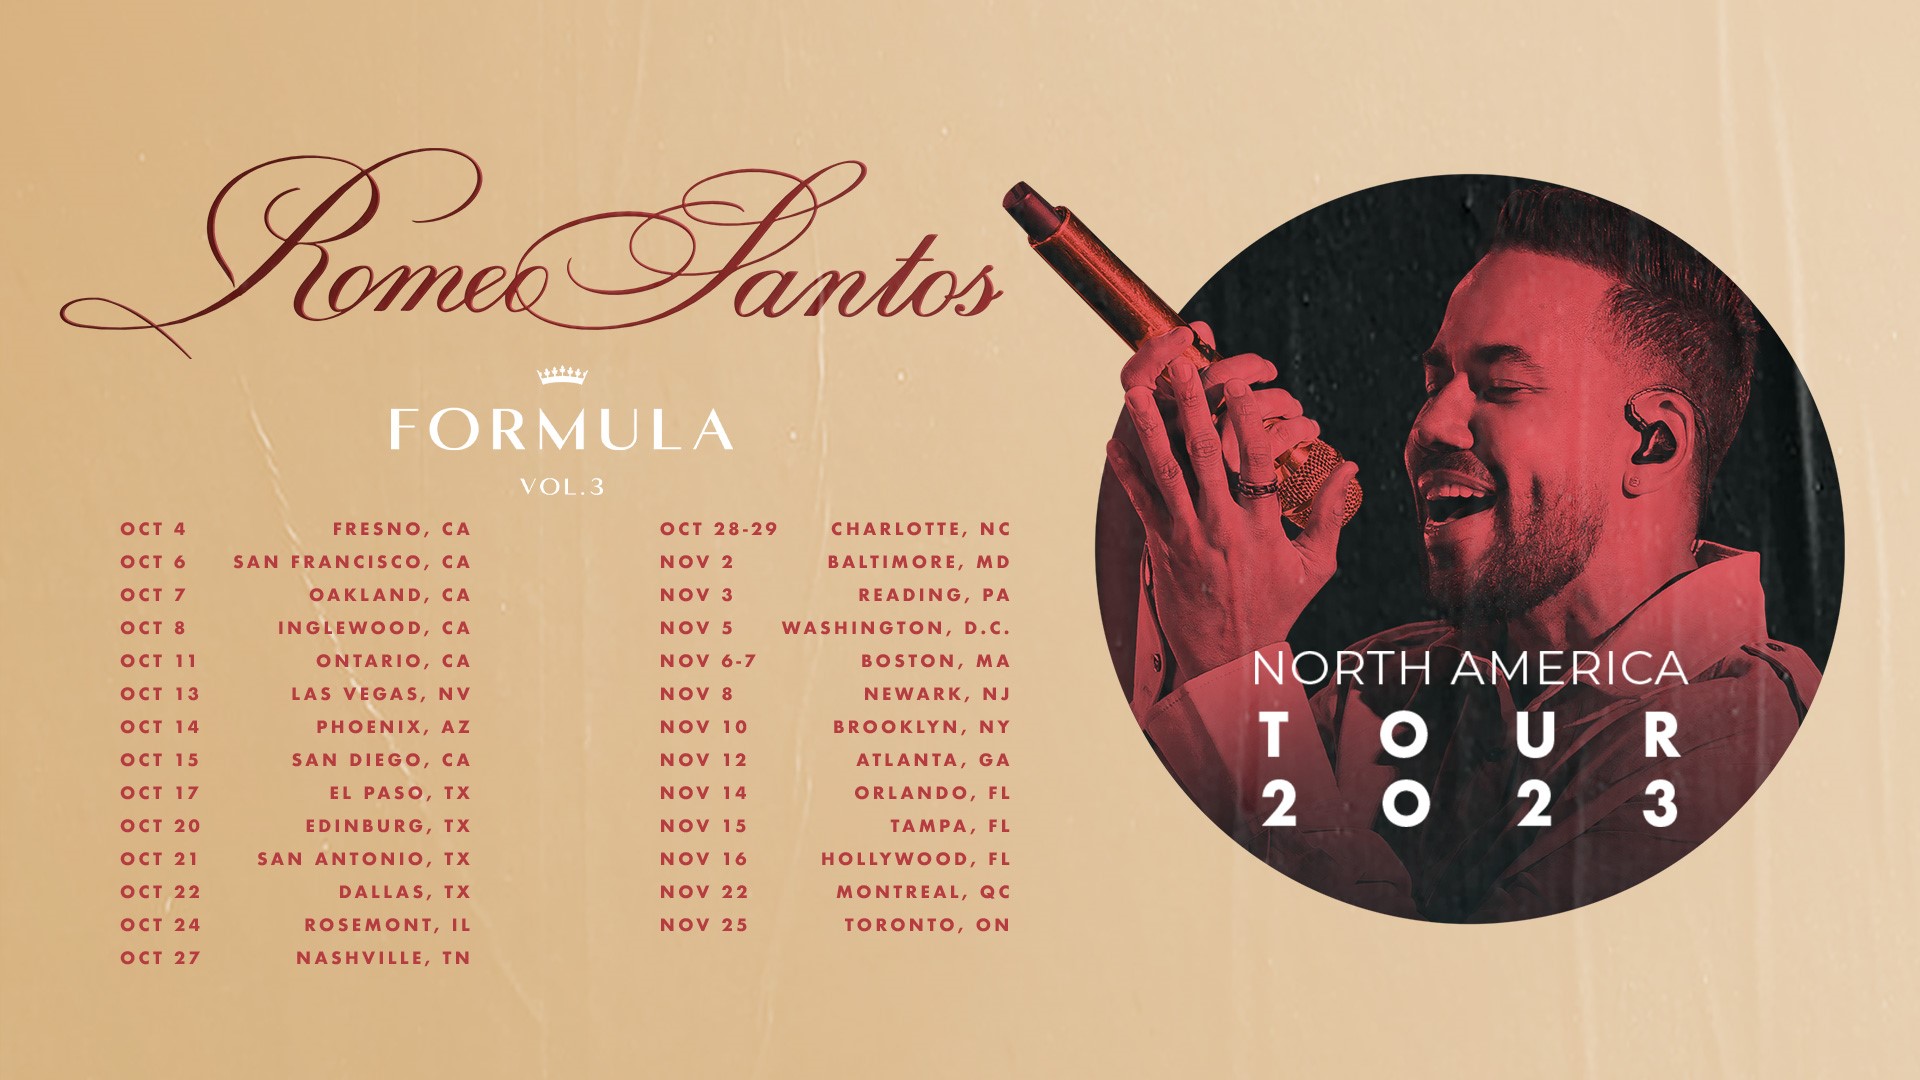 Romeo Santos, Fomula Volume 3, Tour